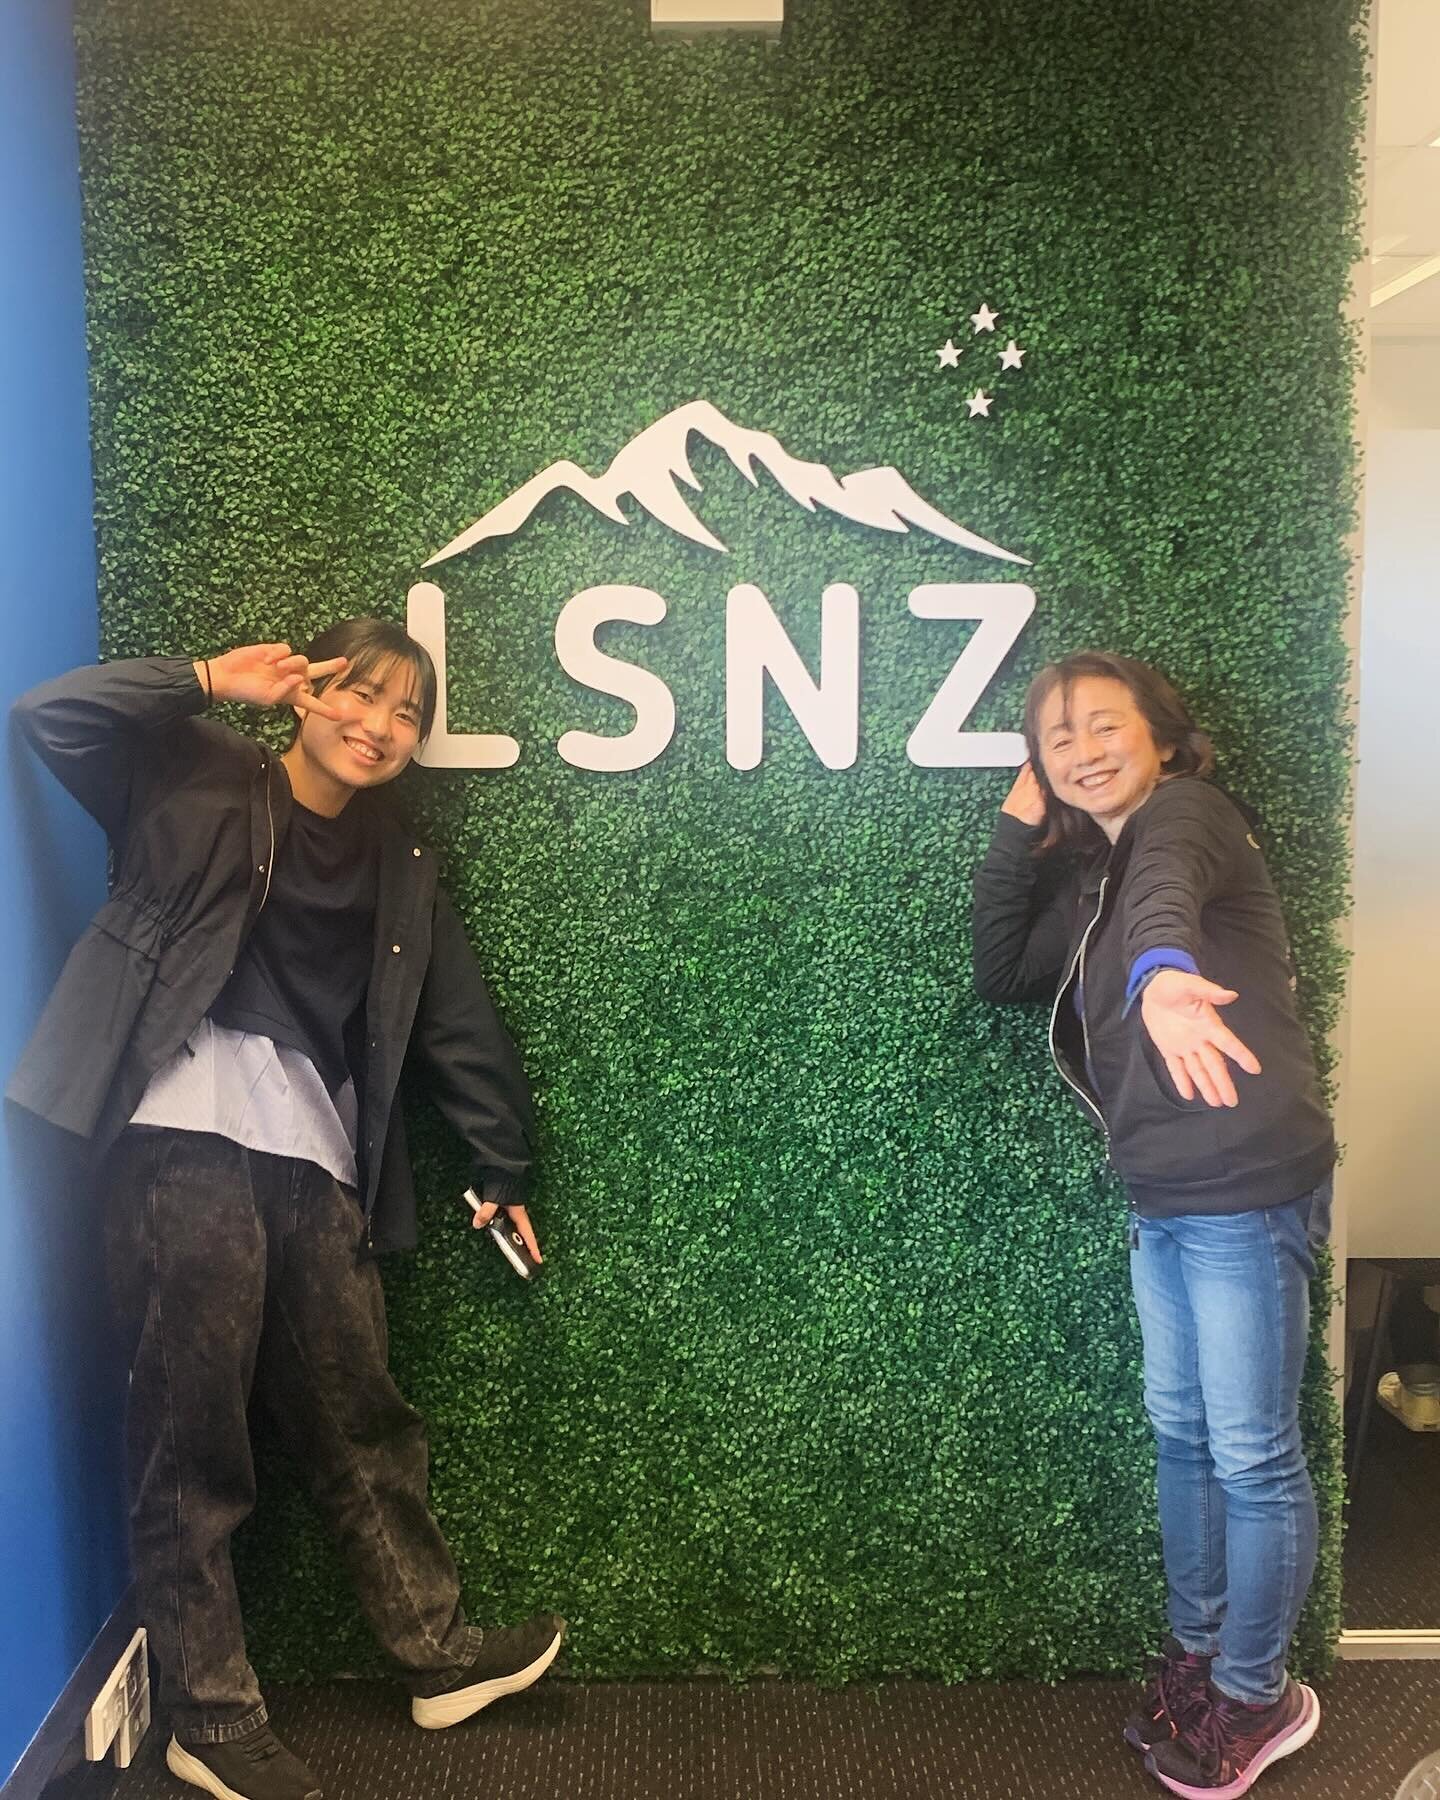 昨日が祝日だった関係で、本日より2週間の語学留学スタートのRenaさんとKimieさん✨

実はおばあちゃんとお孫さんなんです🫣💛
一緒に留学なんて素敵ですね✈️

お二人とも積極的に英語を話しながら早速留学を楽しんでいらっしゃる様子でした🫶🏻

留学先の語学学校: LSNZクイーンズタウン校

#語学留学
#ニュージーランド留学